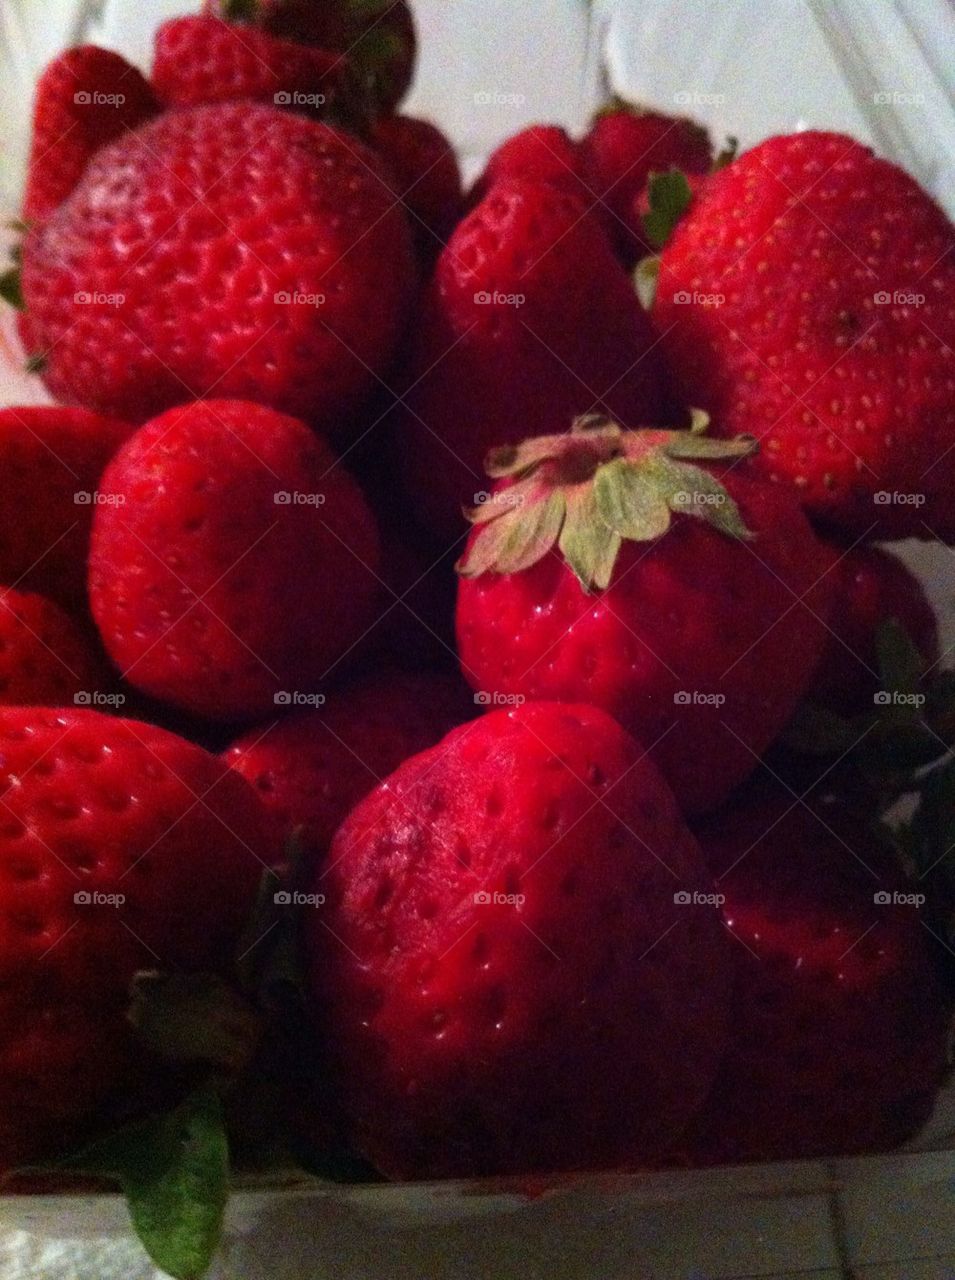 Delicious red, ripe strawberry